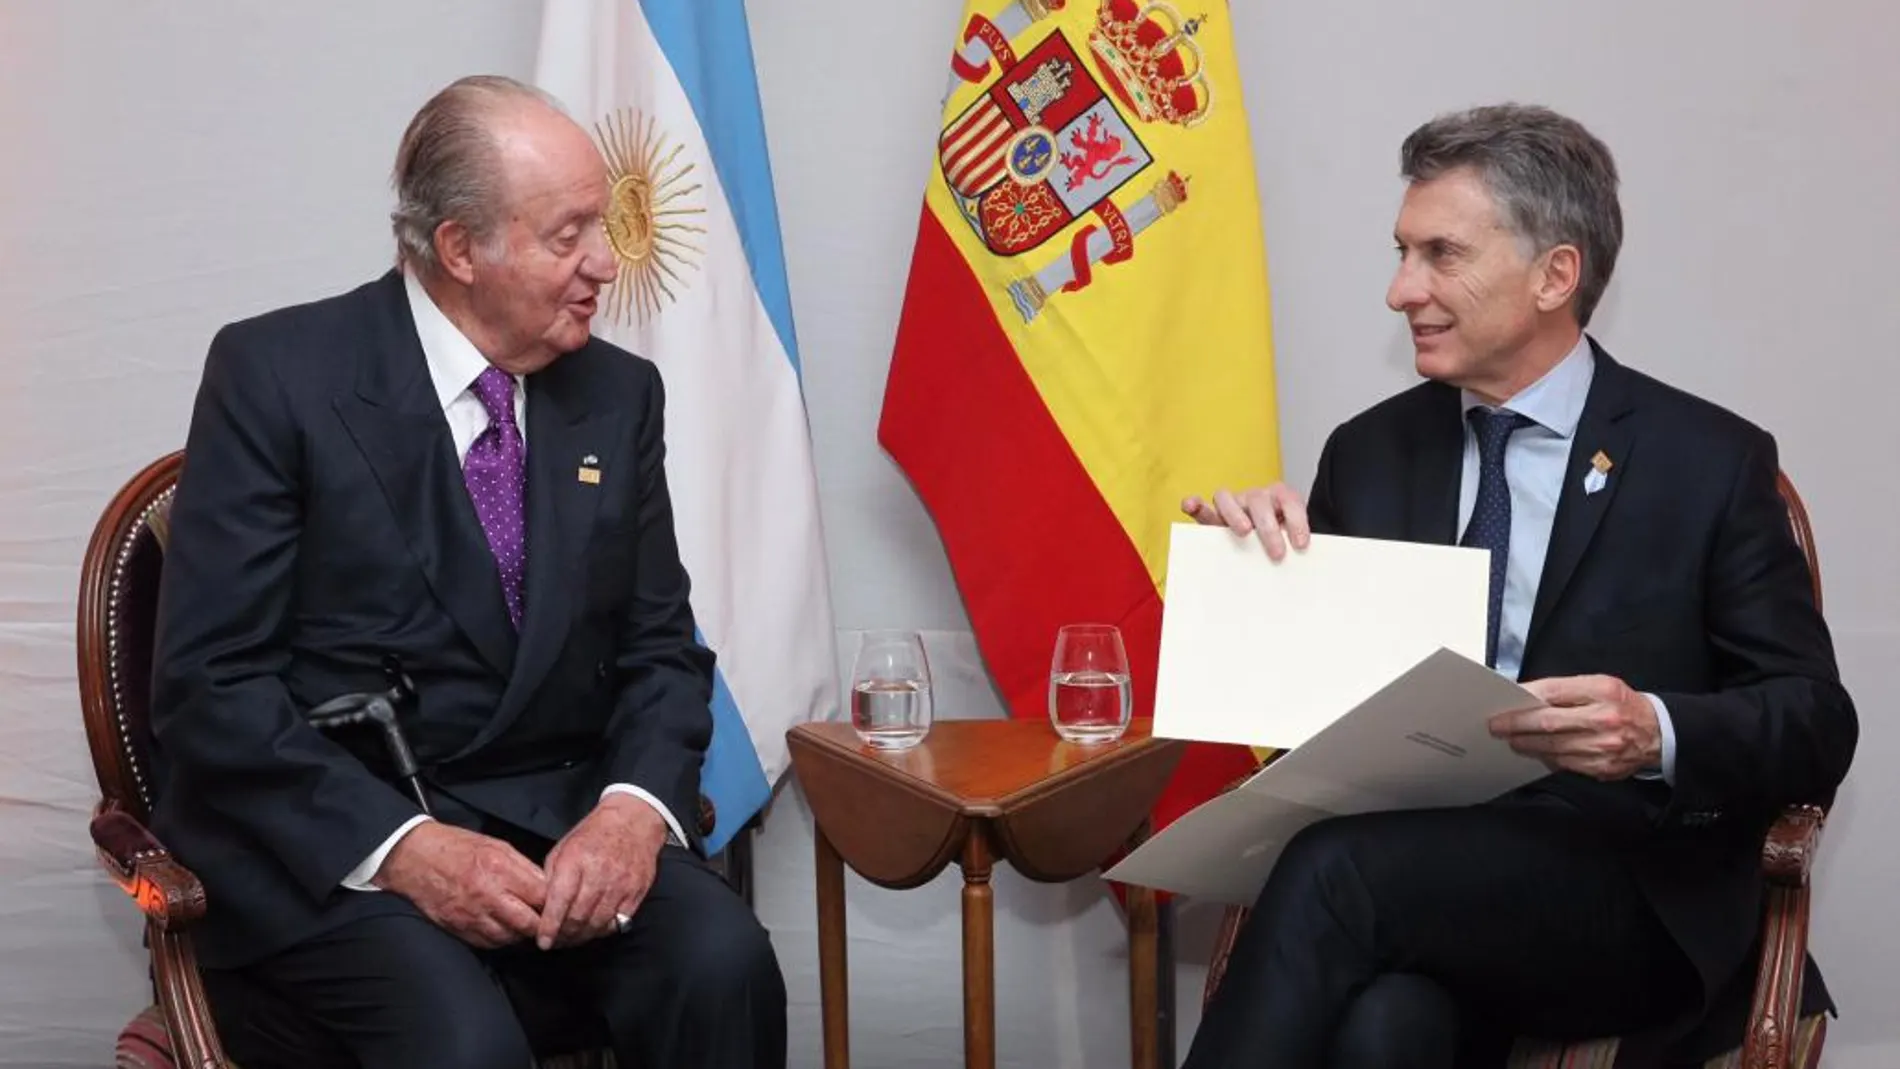 El Rey Juan Carlos I de España conversa con el presidente de la República de Argentina, Mauricio Macri en San Miguel de Tucumán.